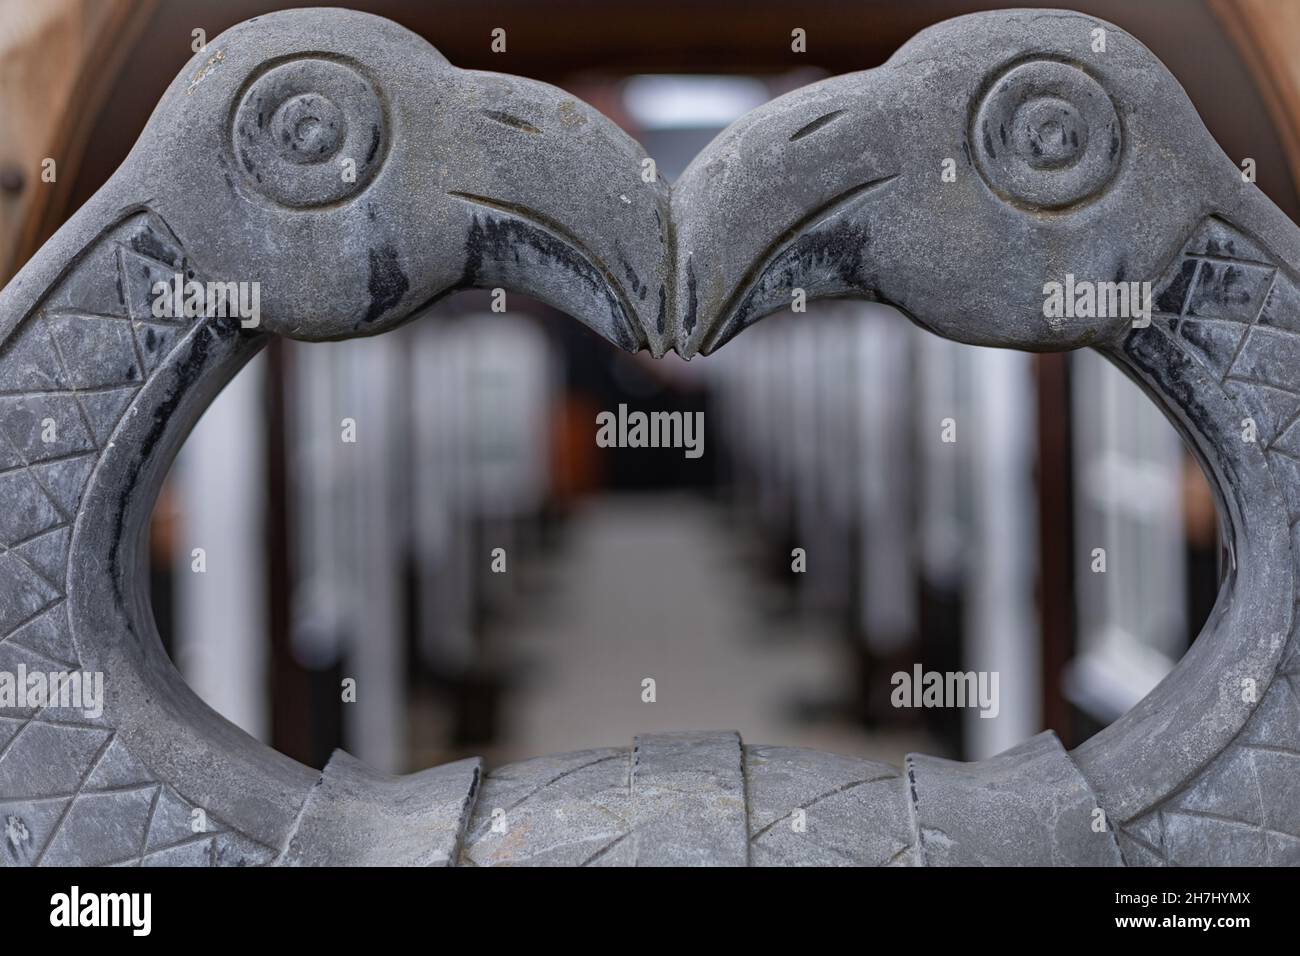 Hafnarfjordur, Islande - 31 mai 2021 : deux oiseaux de pierre, la sculpture en pierre d'Odin rend hommage à l'hôtel Viking.Arrière-plan flou. Banque D'Images